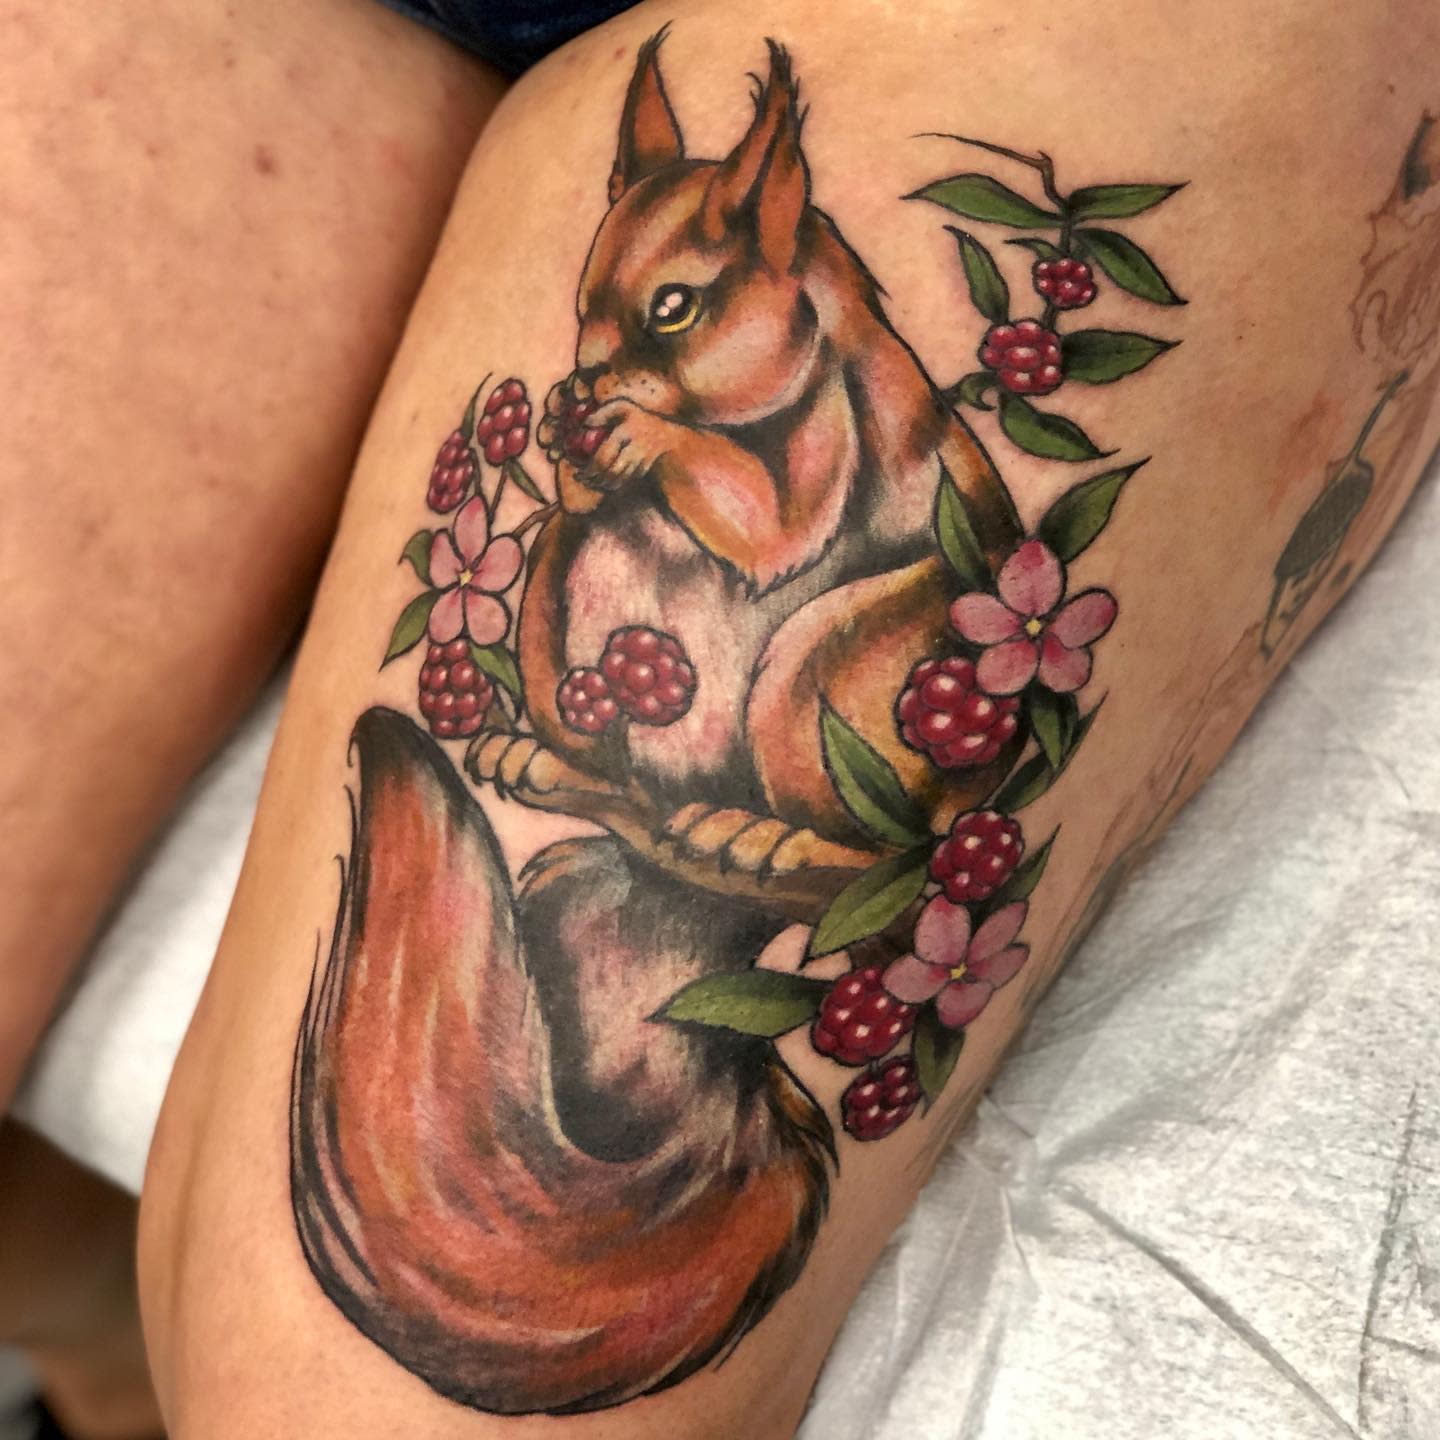 Self tattoo squirrel by teedark on DeviantArt